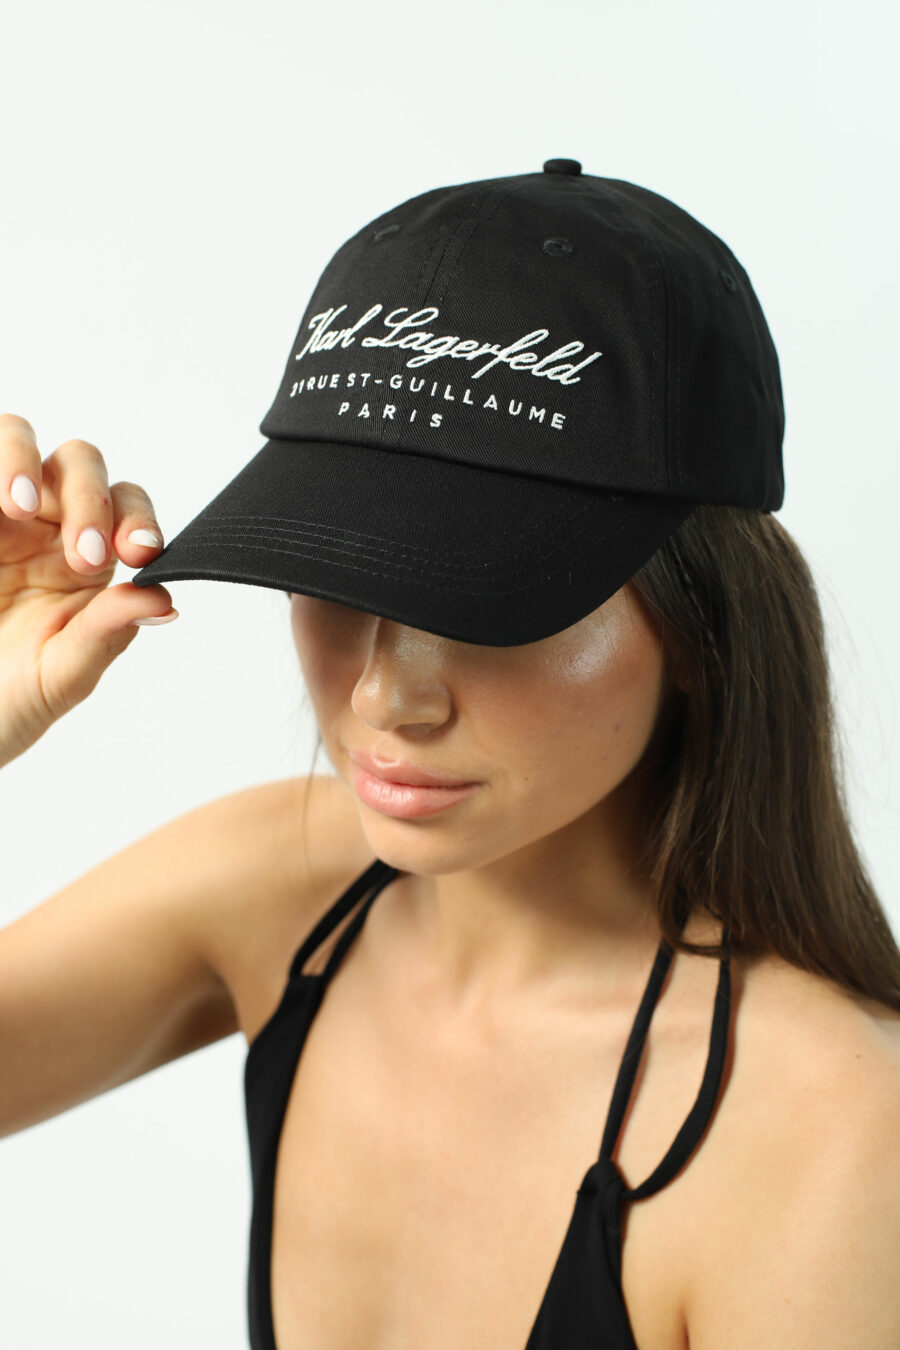 Black cap with calligraphic "hotel" logo - Photos 3017